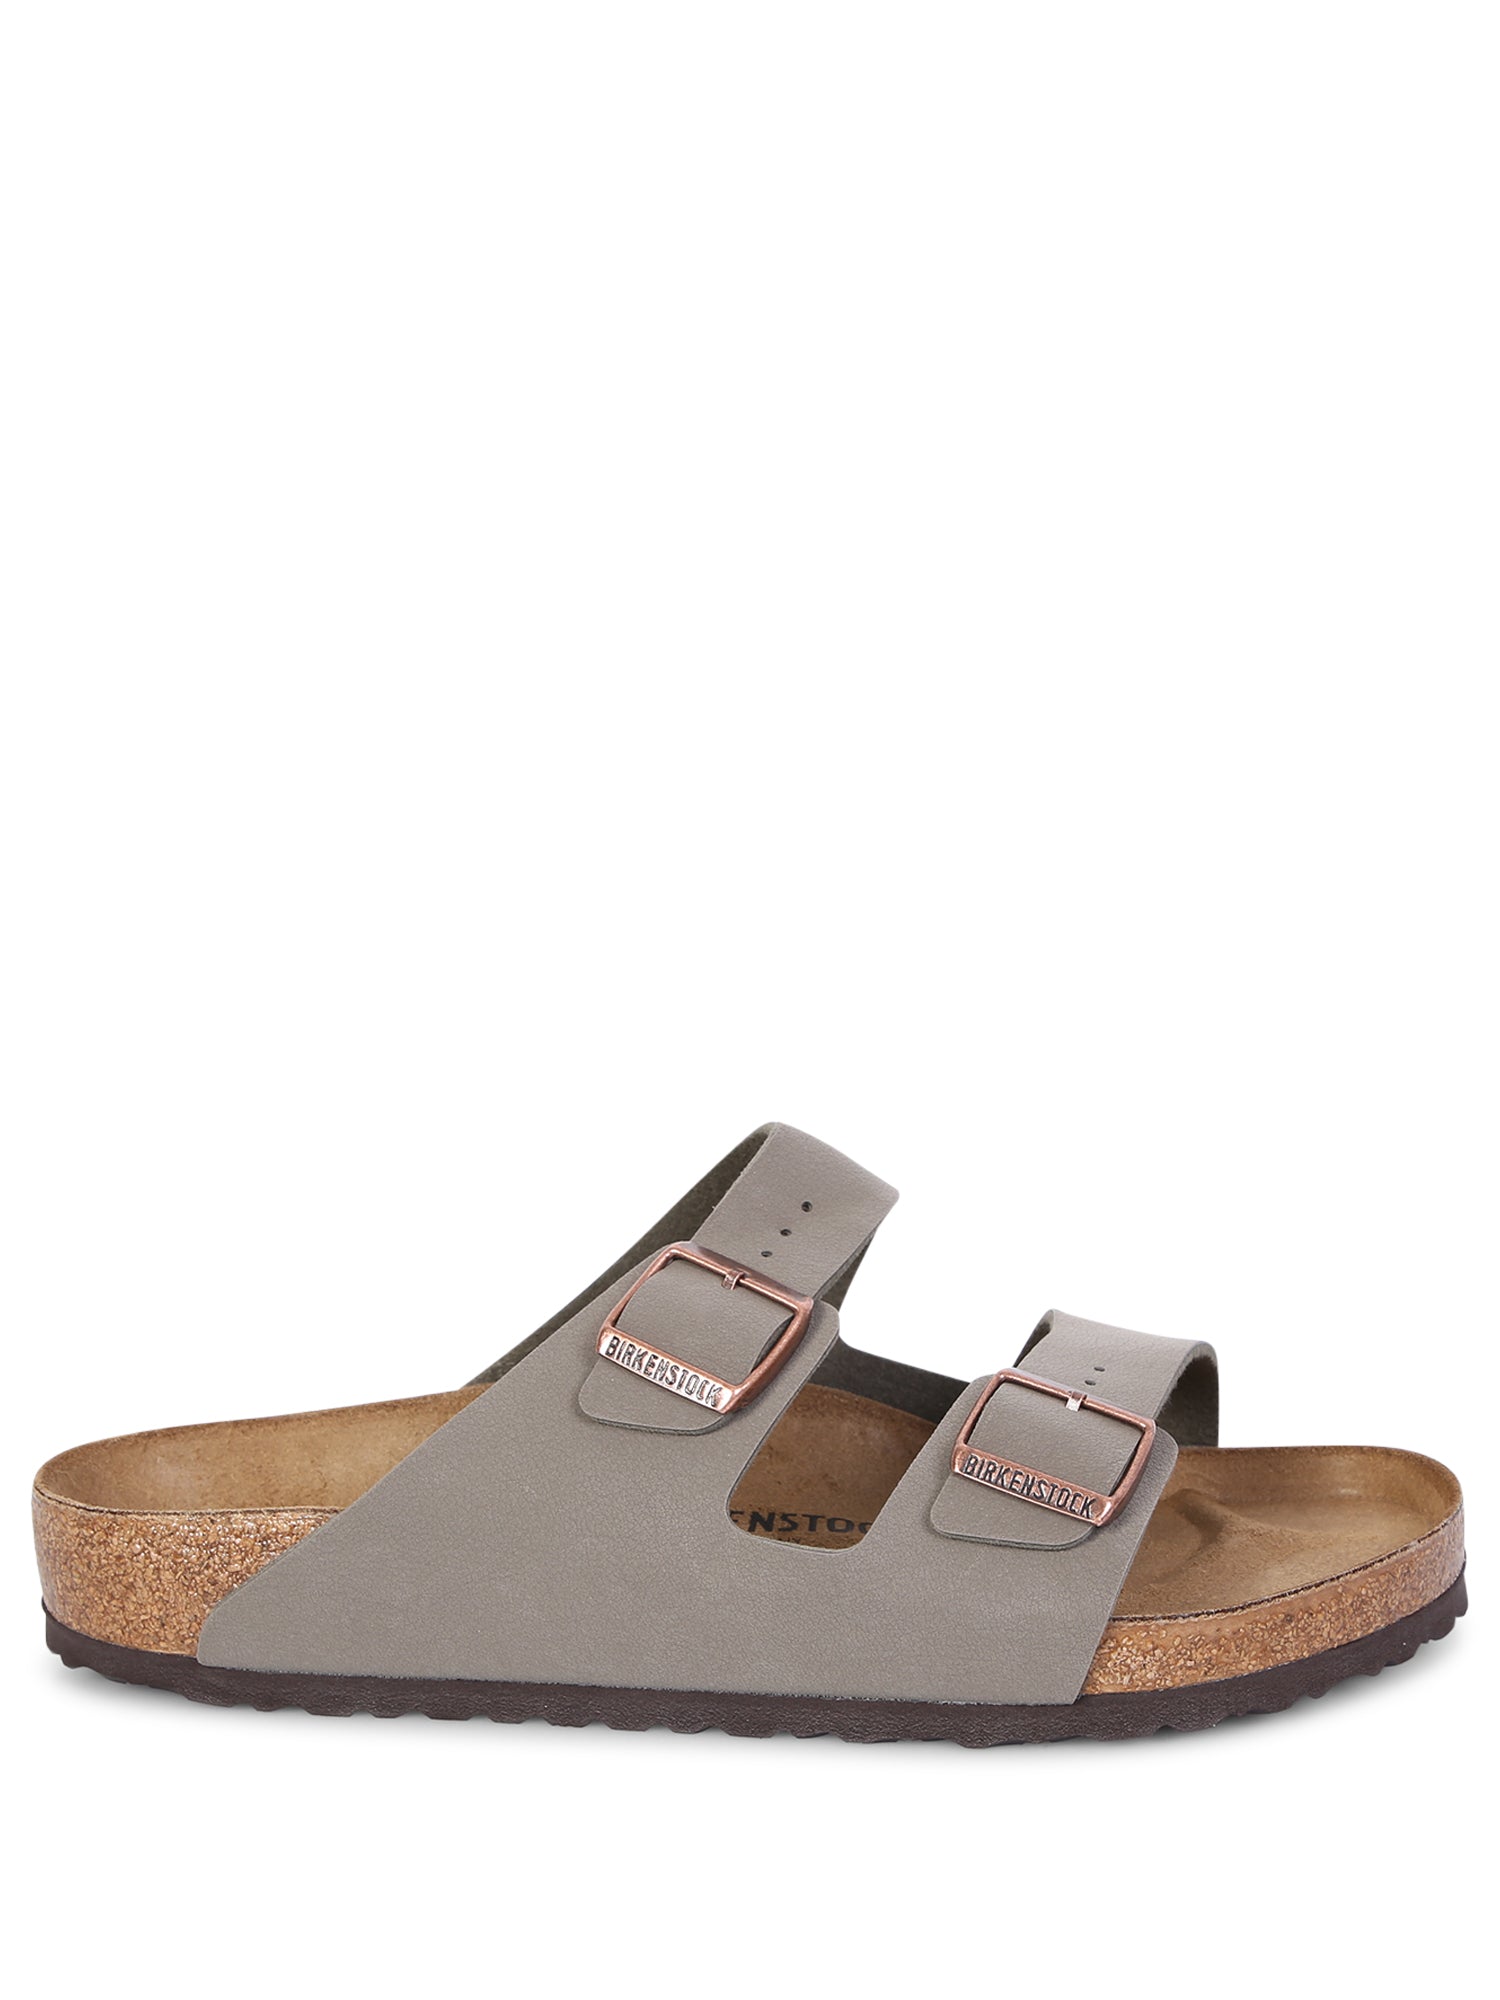 Arizona stone sandals